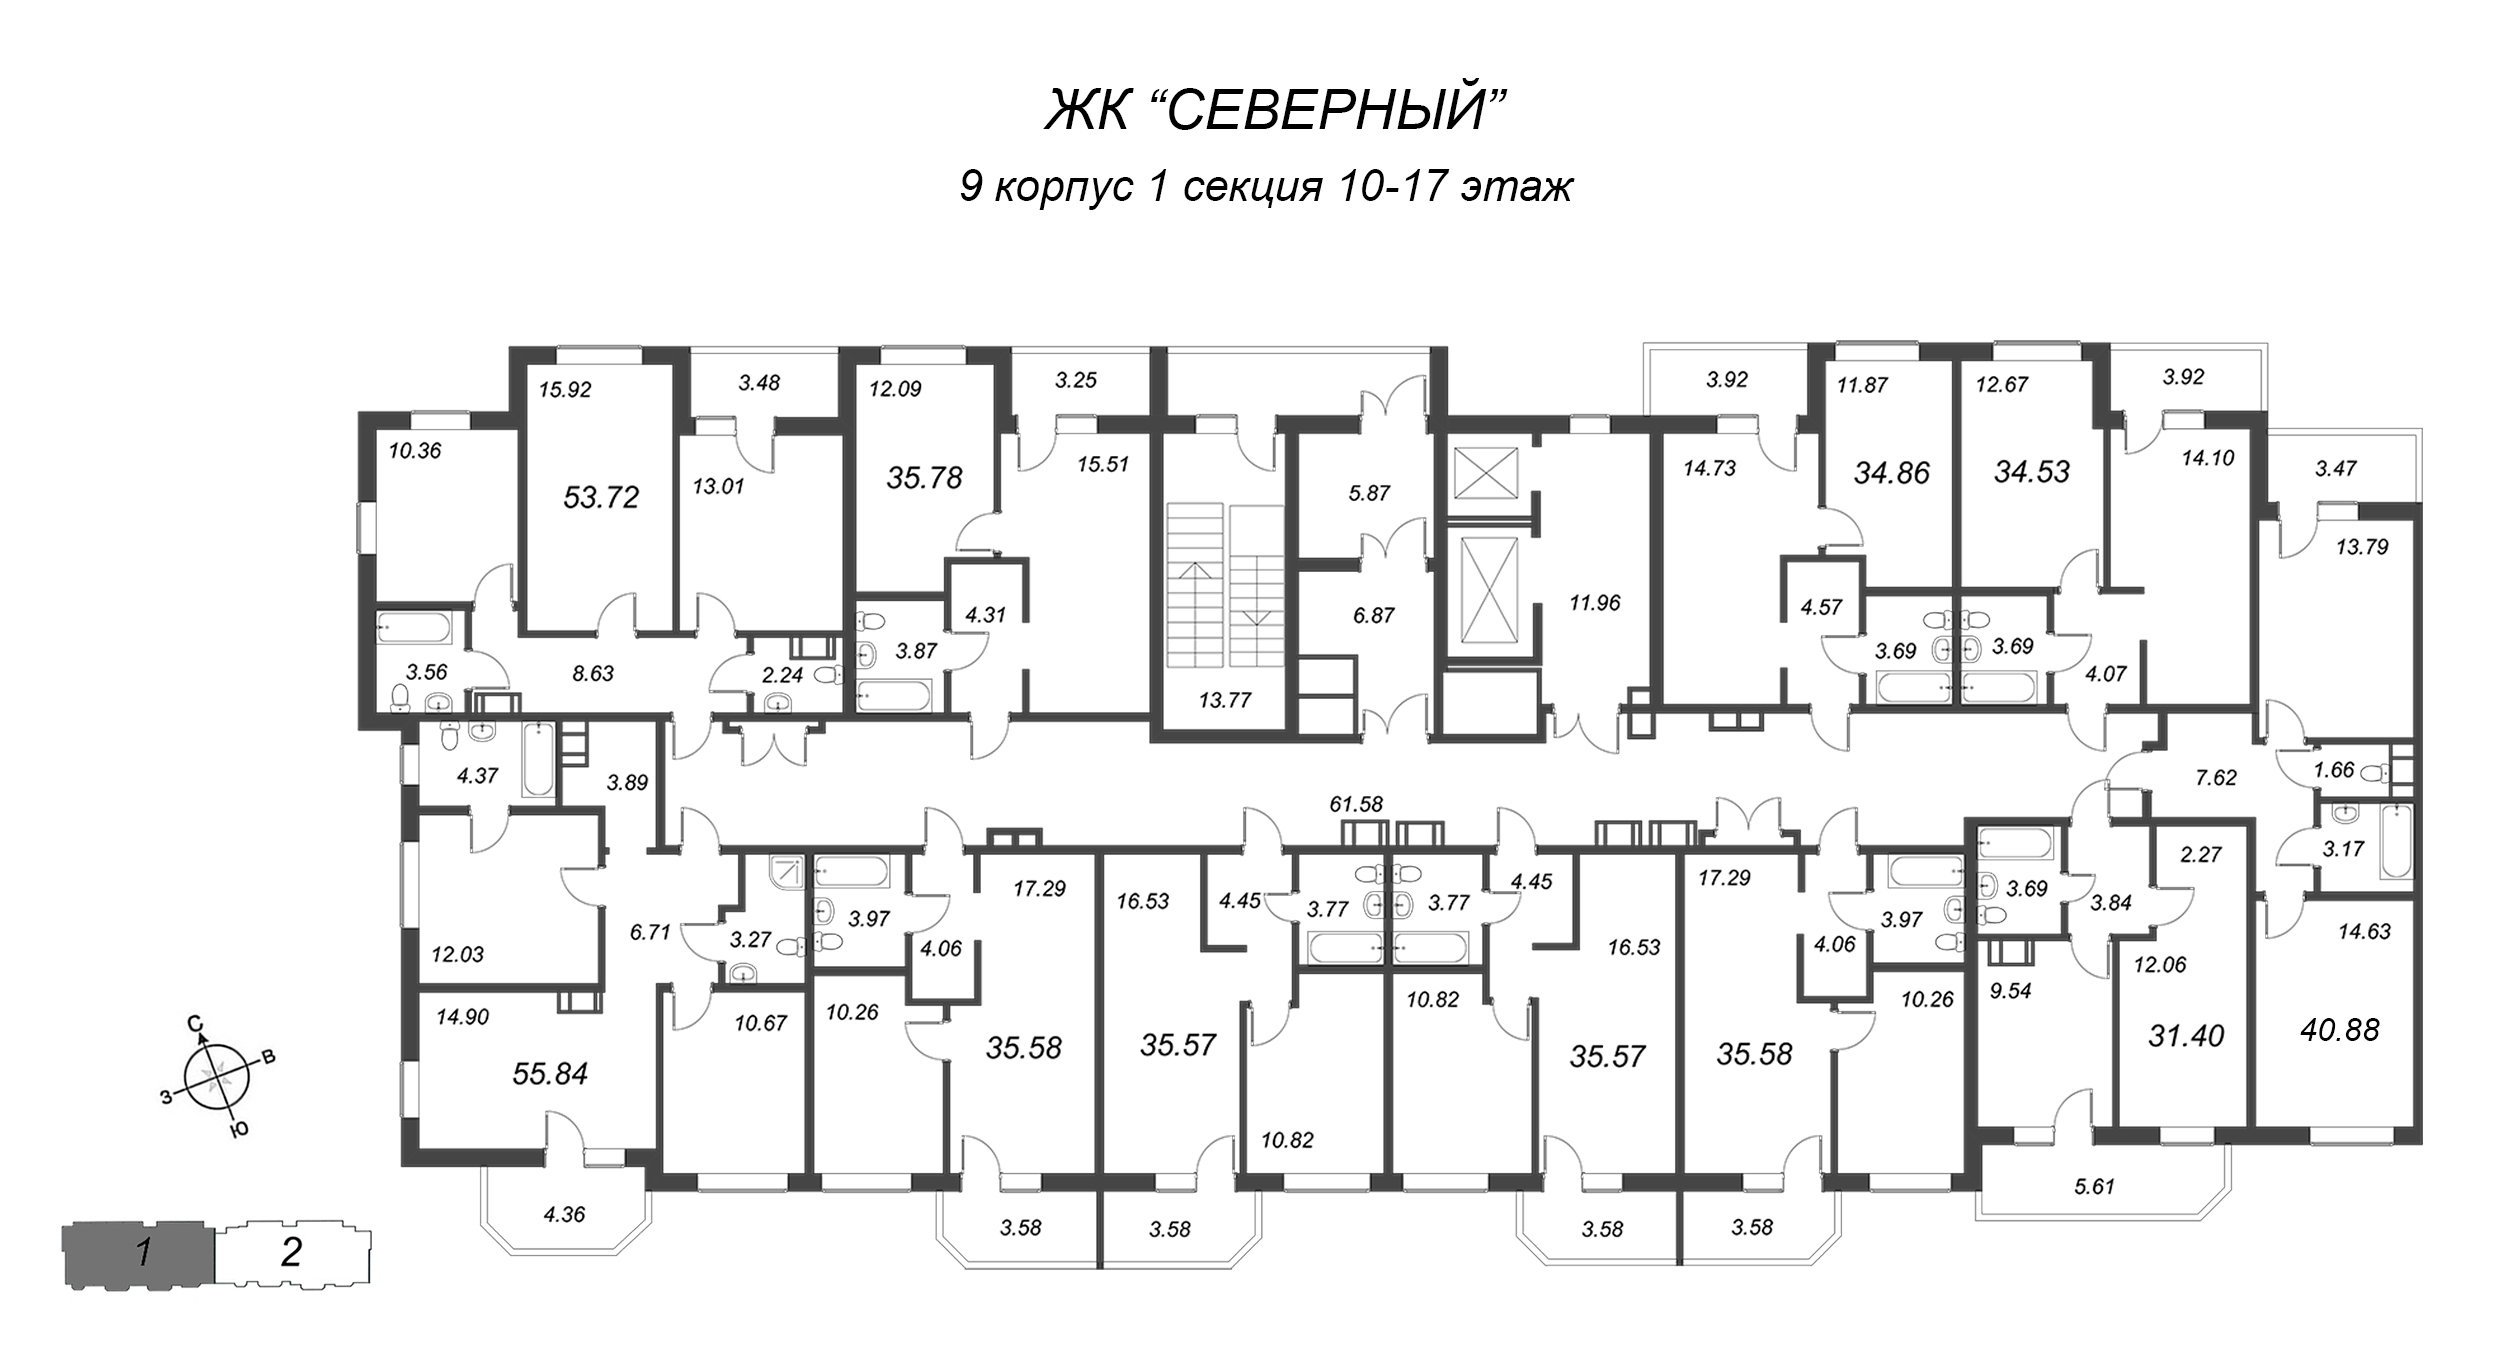 3-комнатная (Евро) квартира, 55.84 м² в ЖК "Северный" - планировка этажа